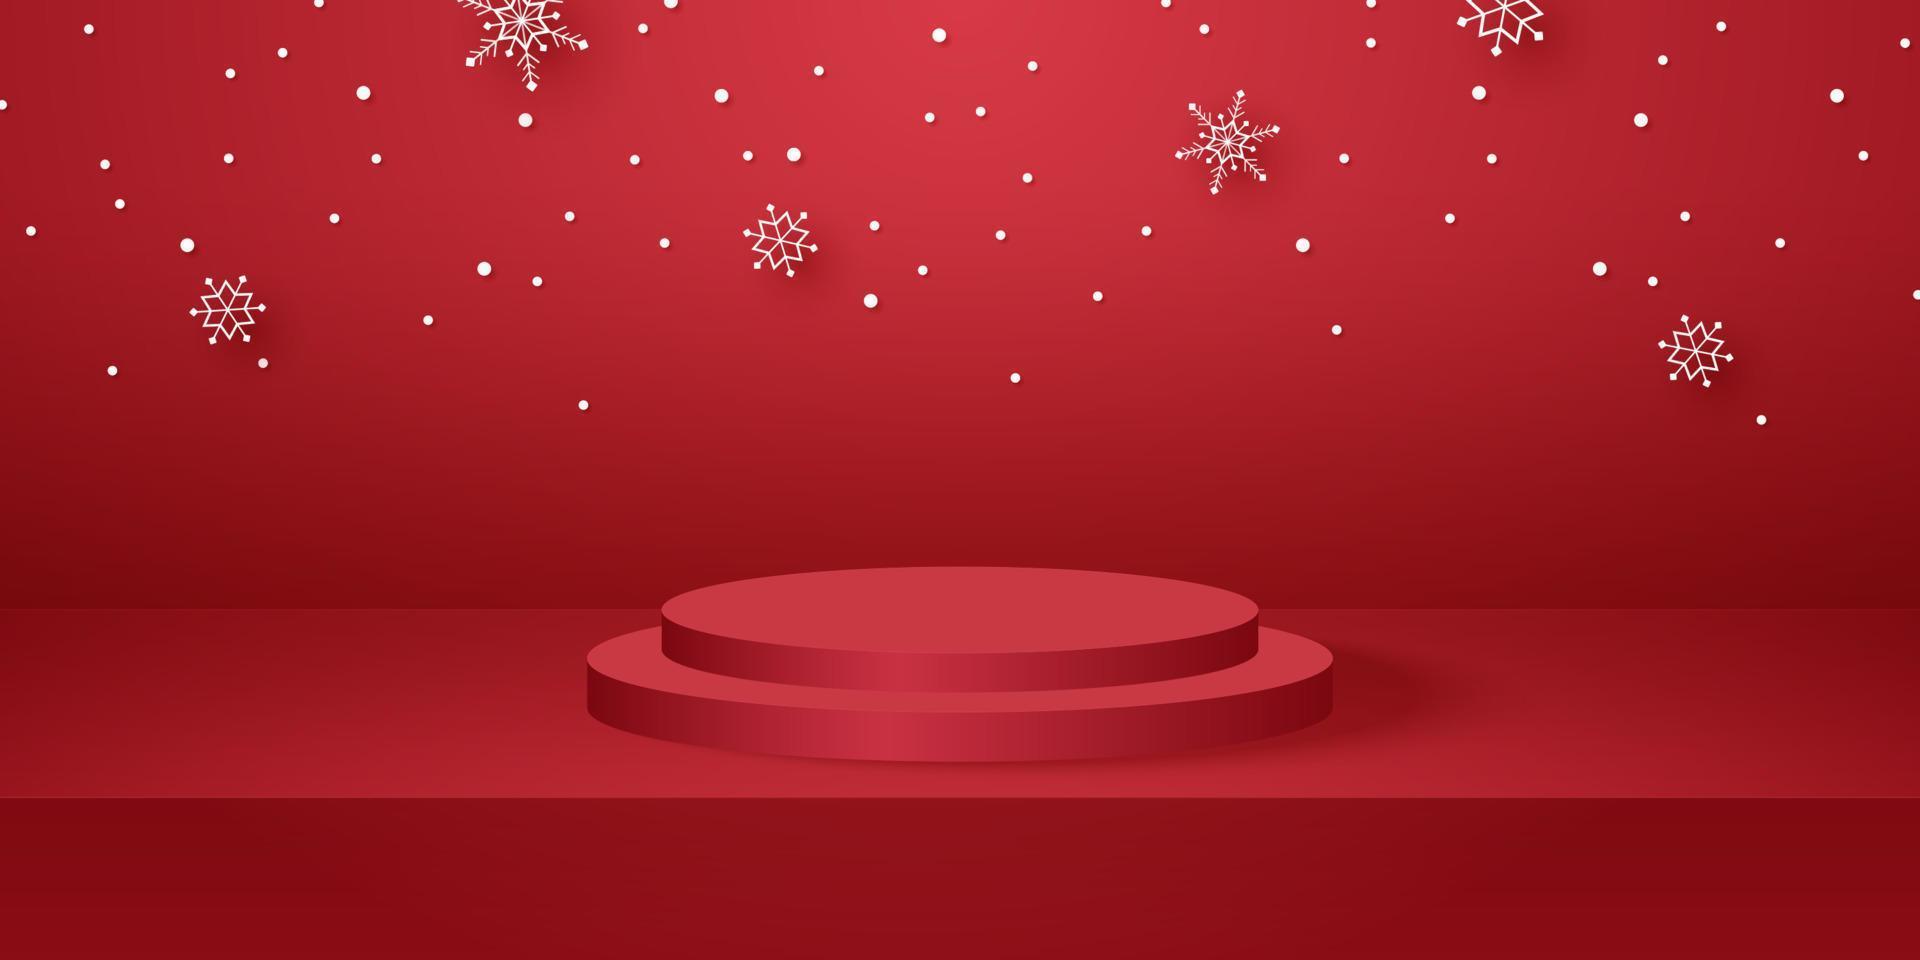 rood rond podium met lege studioruimte voor productachtergrond en sneeuwval, sjabloonmodel voor eerste kerstdag vector